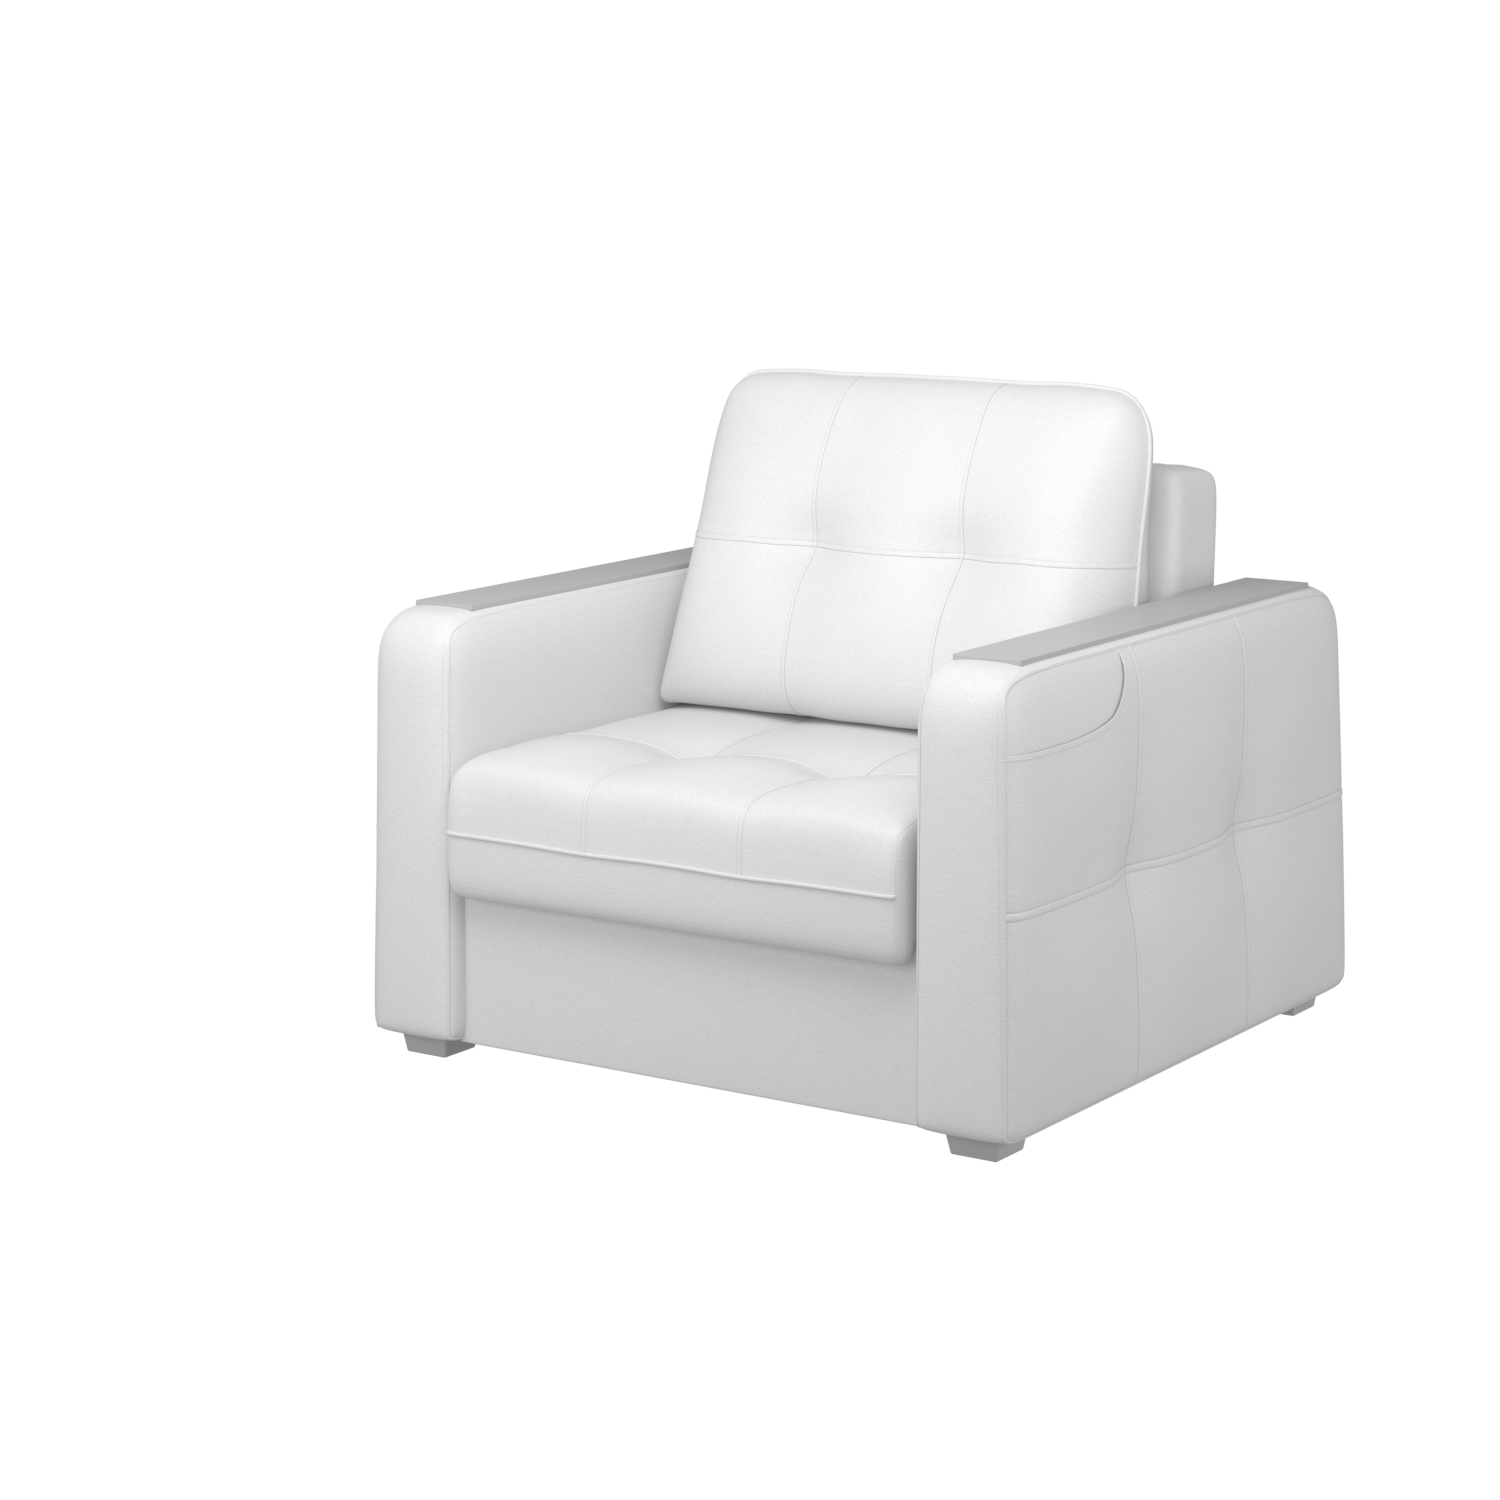 Мягкое кресло с ящиком Киль-3, кКЛ01.вл33.33у